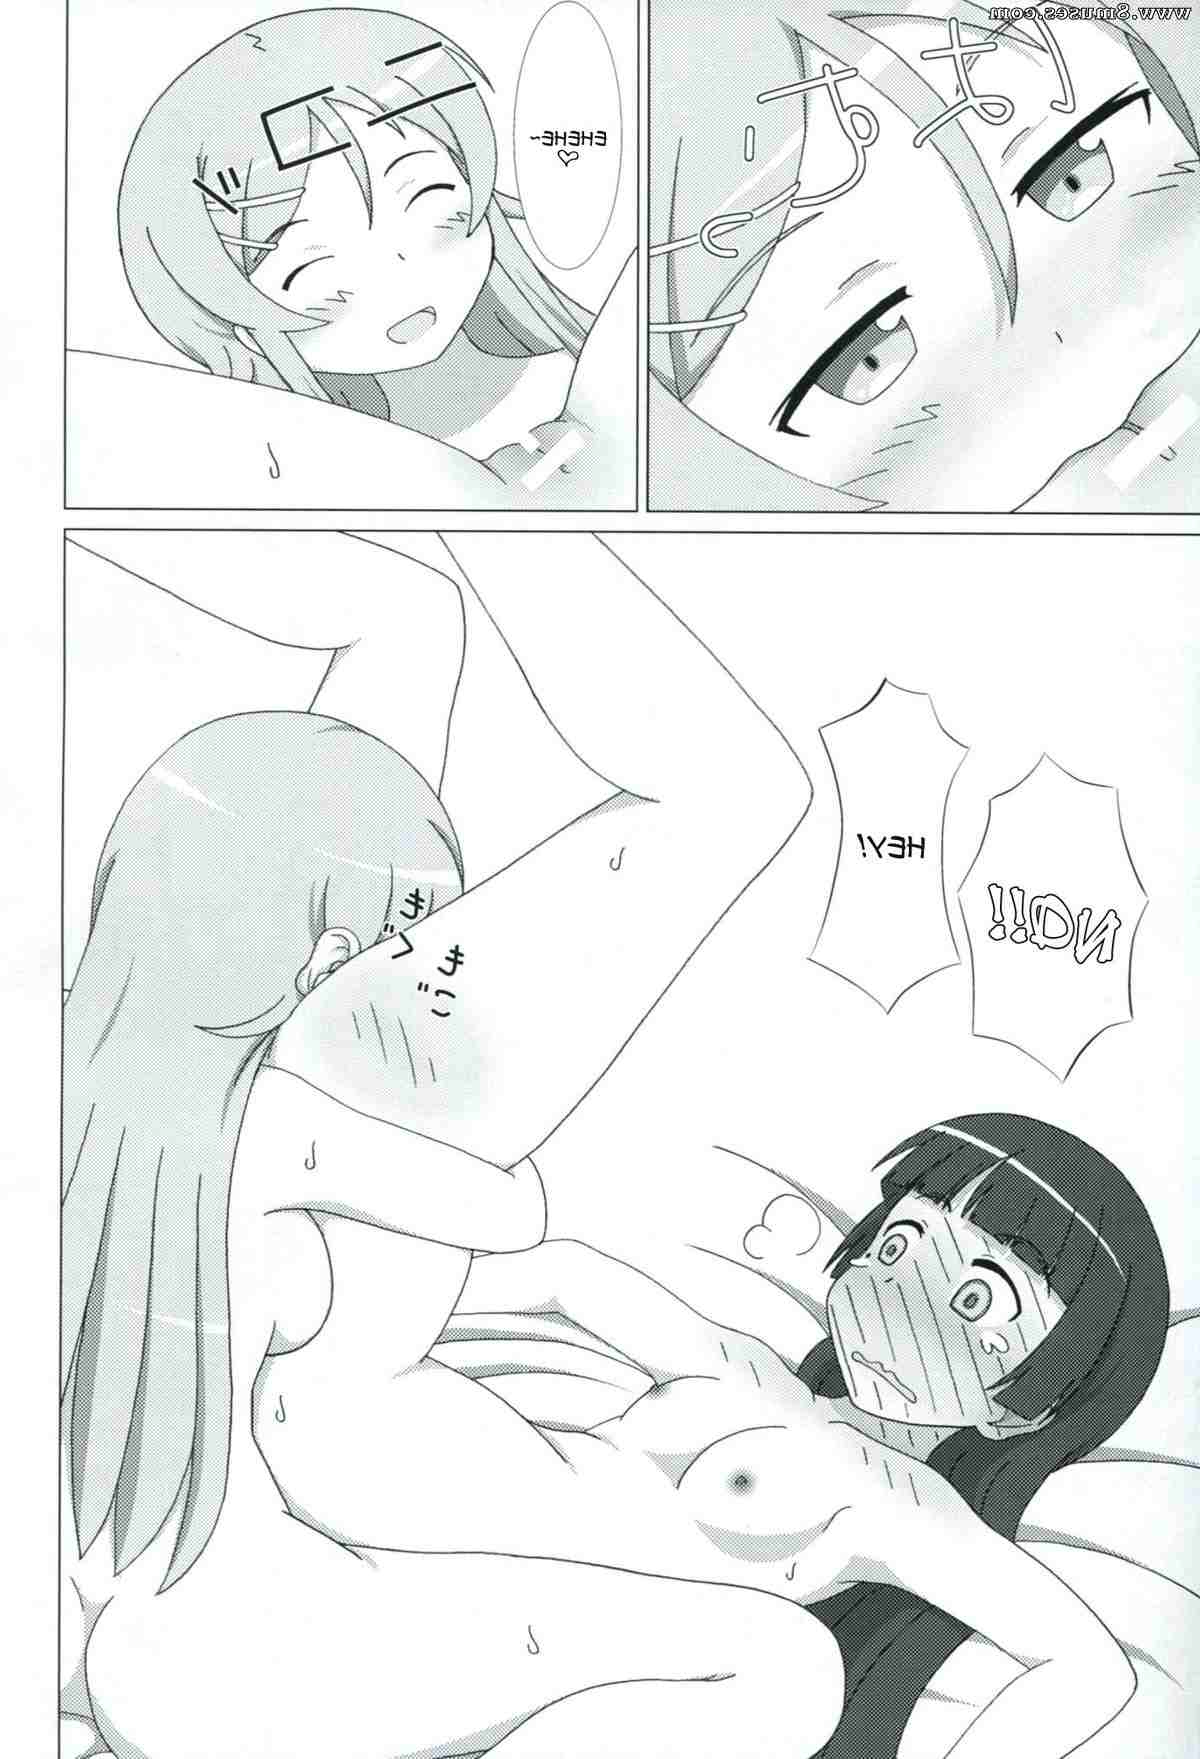 Hentai-and-Manga-English/Ore-no-imouto-ga-konna-ni-kawaii-wake-ga-nai/Kuroneko-ga-Atashi-no-Imouto-EX Kuroneko_ga_Atashi_no_Imouto_EX__8muses_-_Sex_and_Porn_Comics_8.jpg